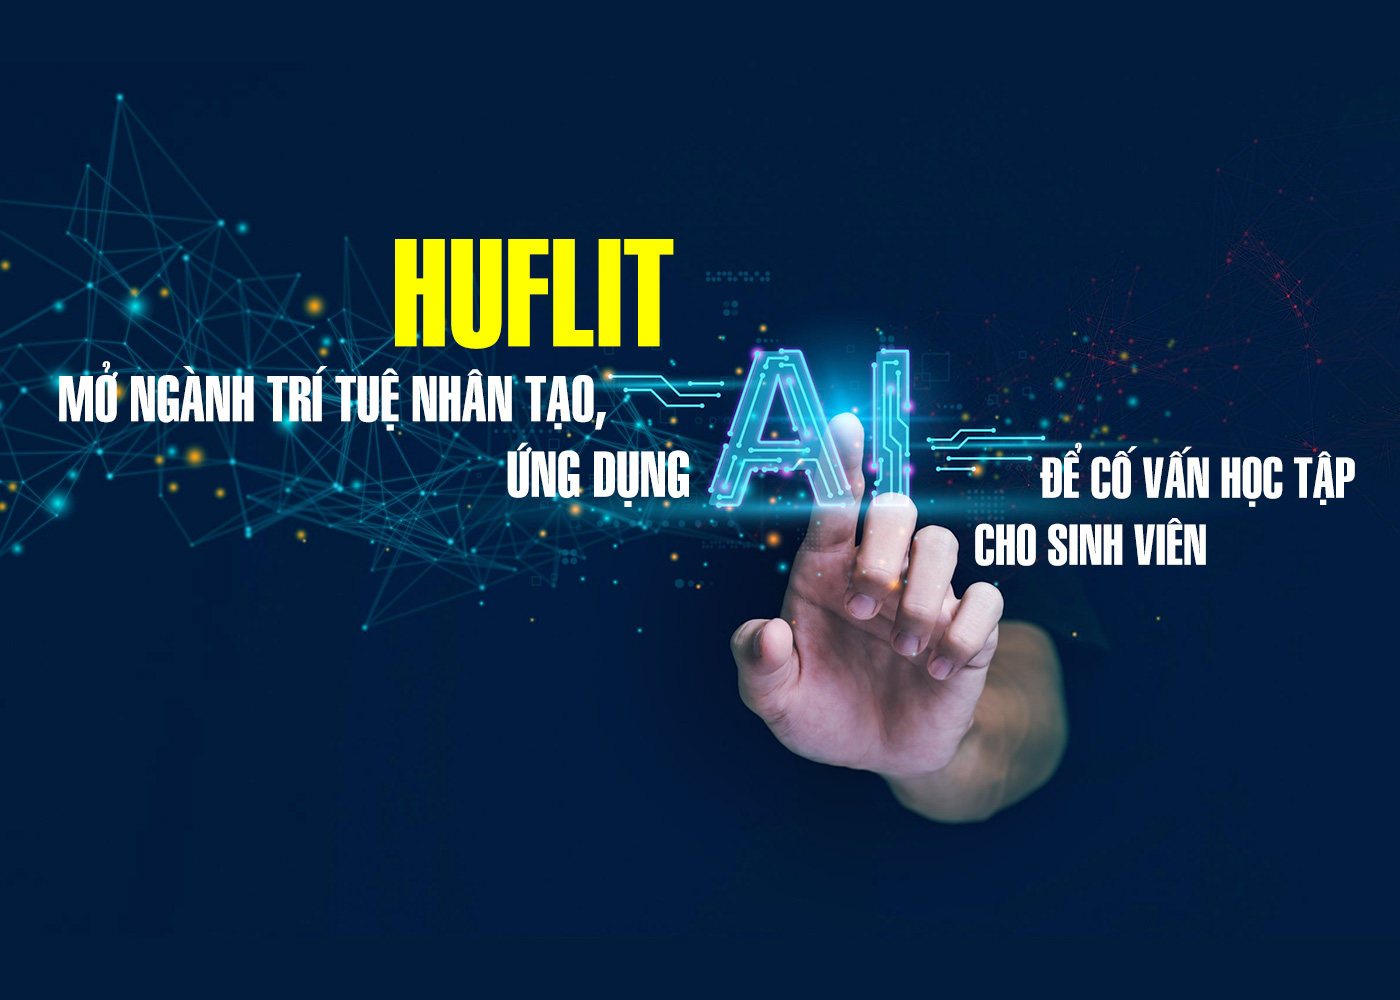 HUFLIT mở ngành Trí tuệ Nhân tạo, ứng dụng AI để cố vấn học tập cho sinh viên - ảnh 1